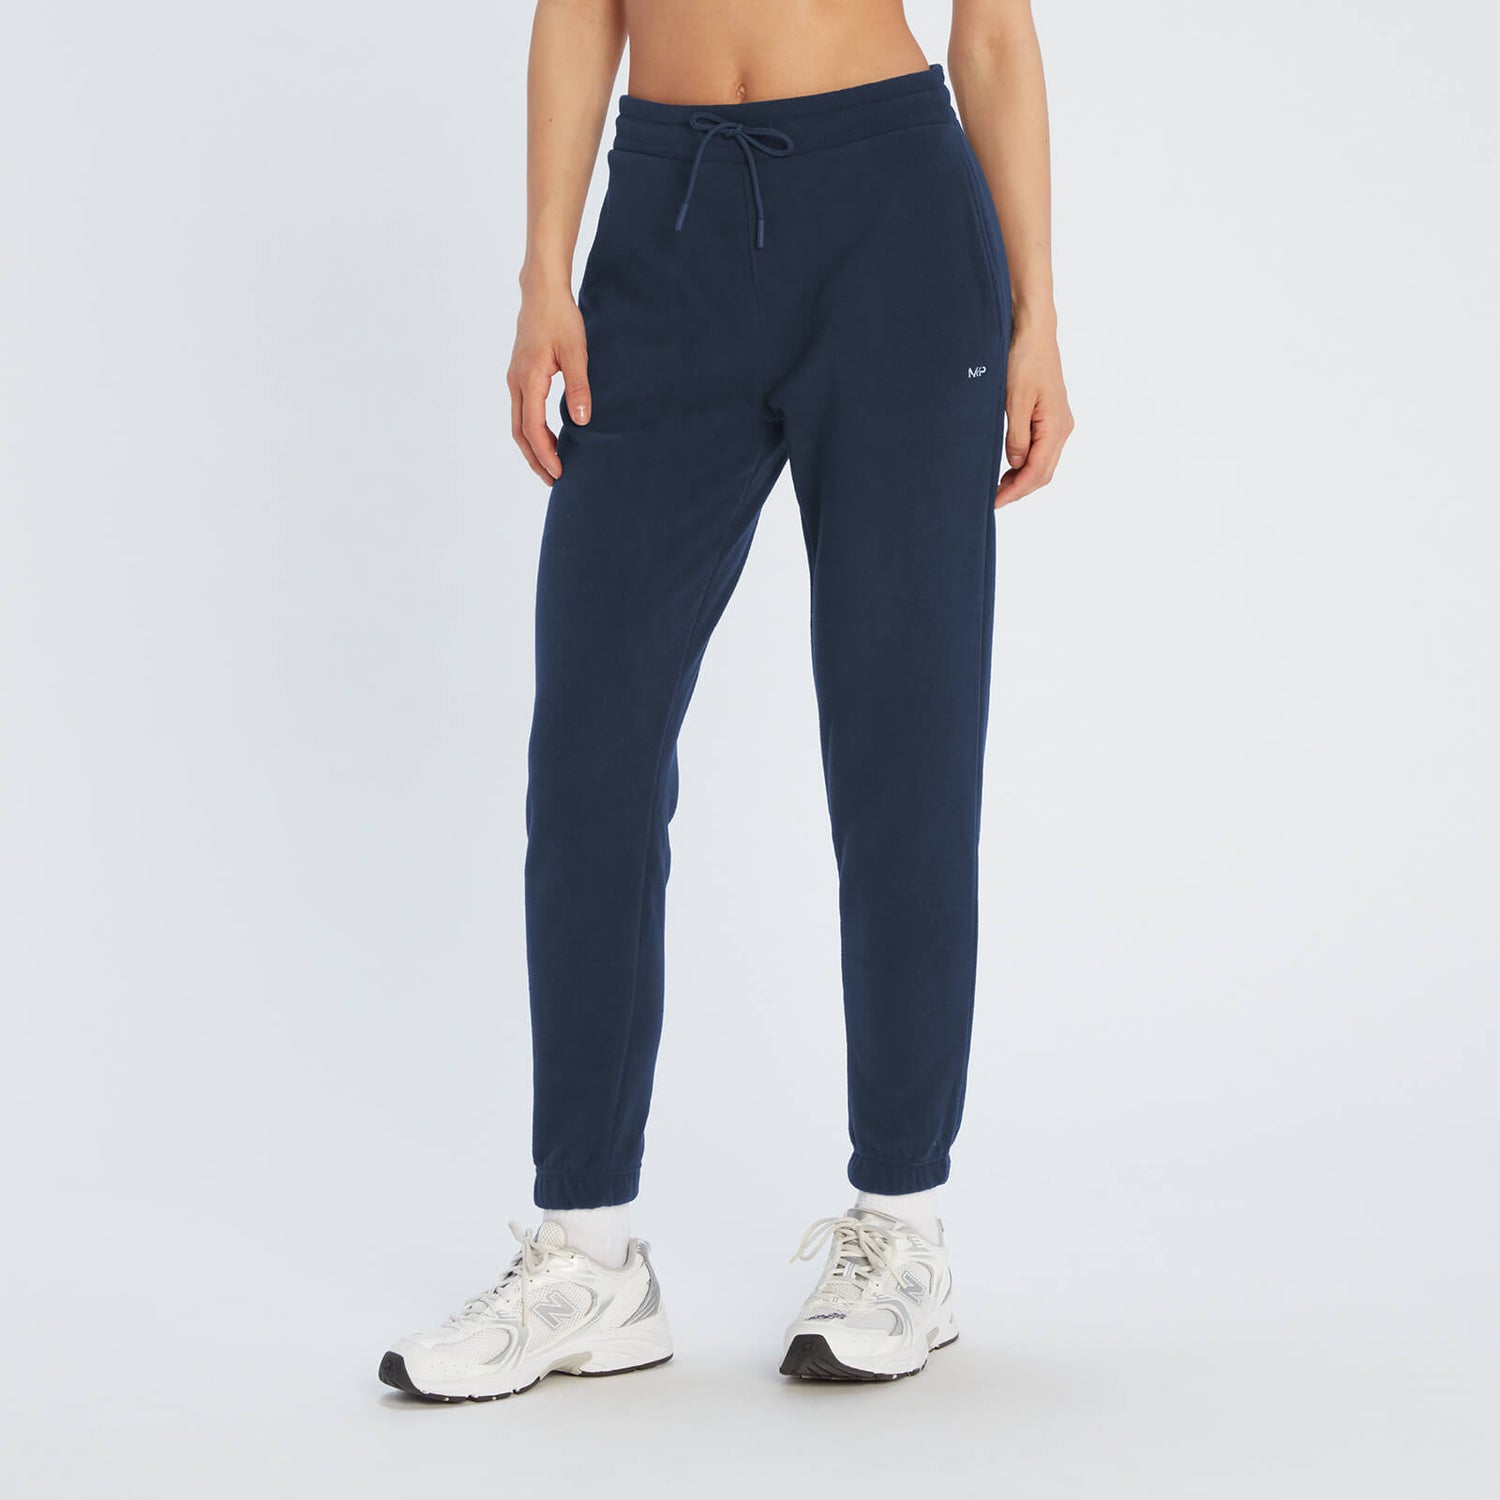 Pantalón deportivo de vellón Essentials para mujer de MP - Azul marino - XS